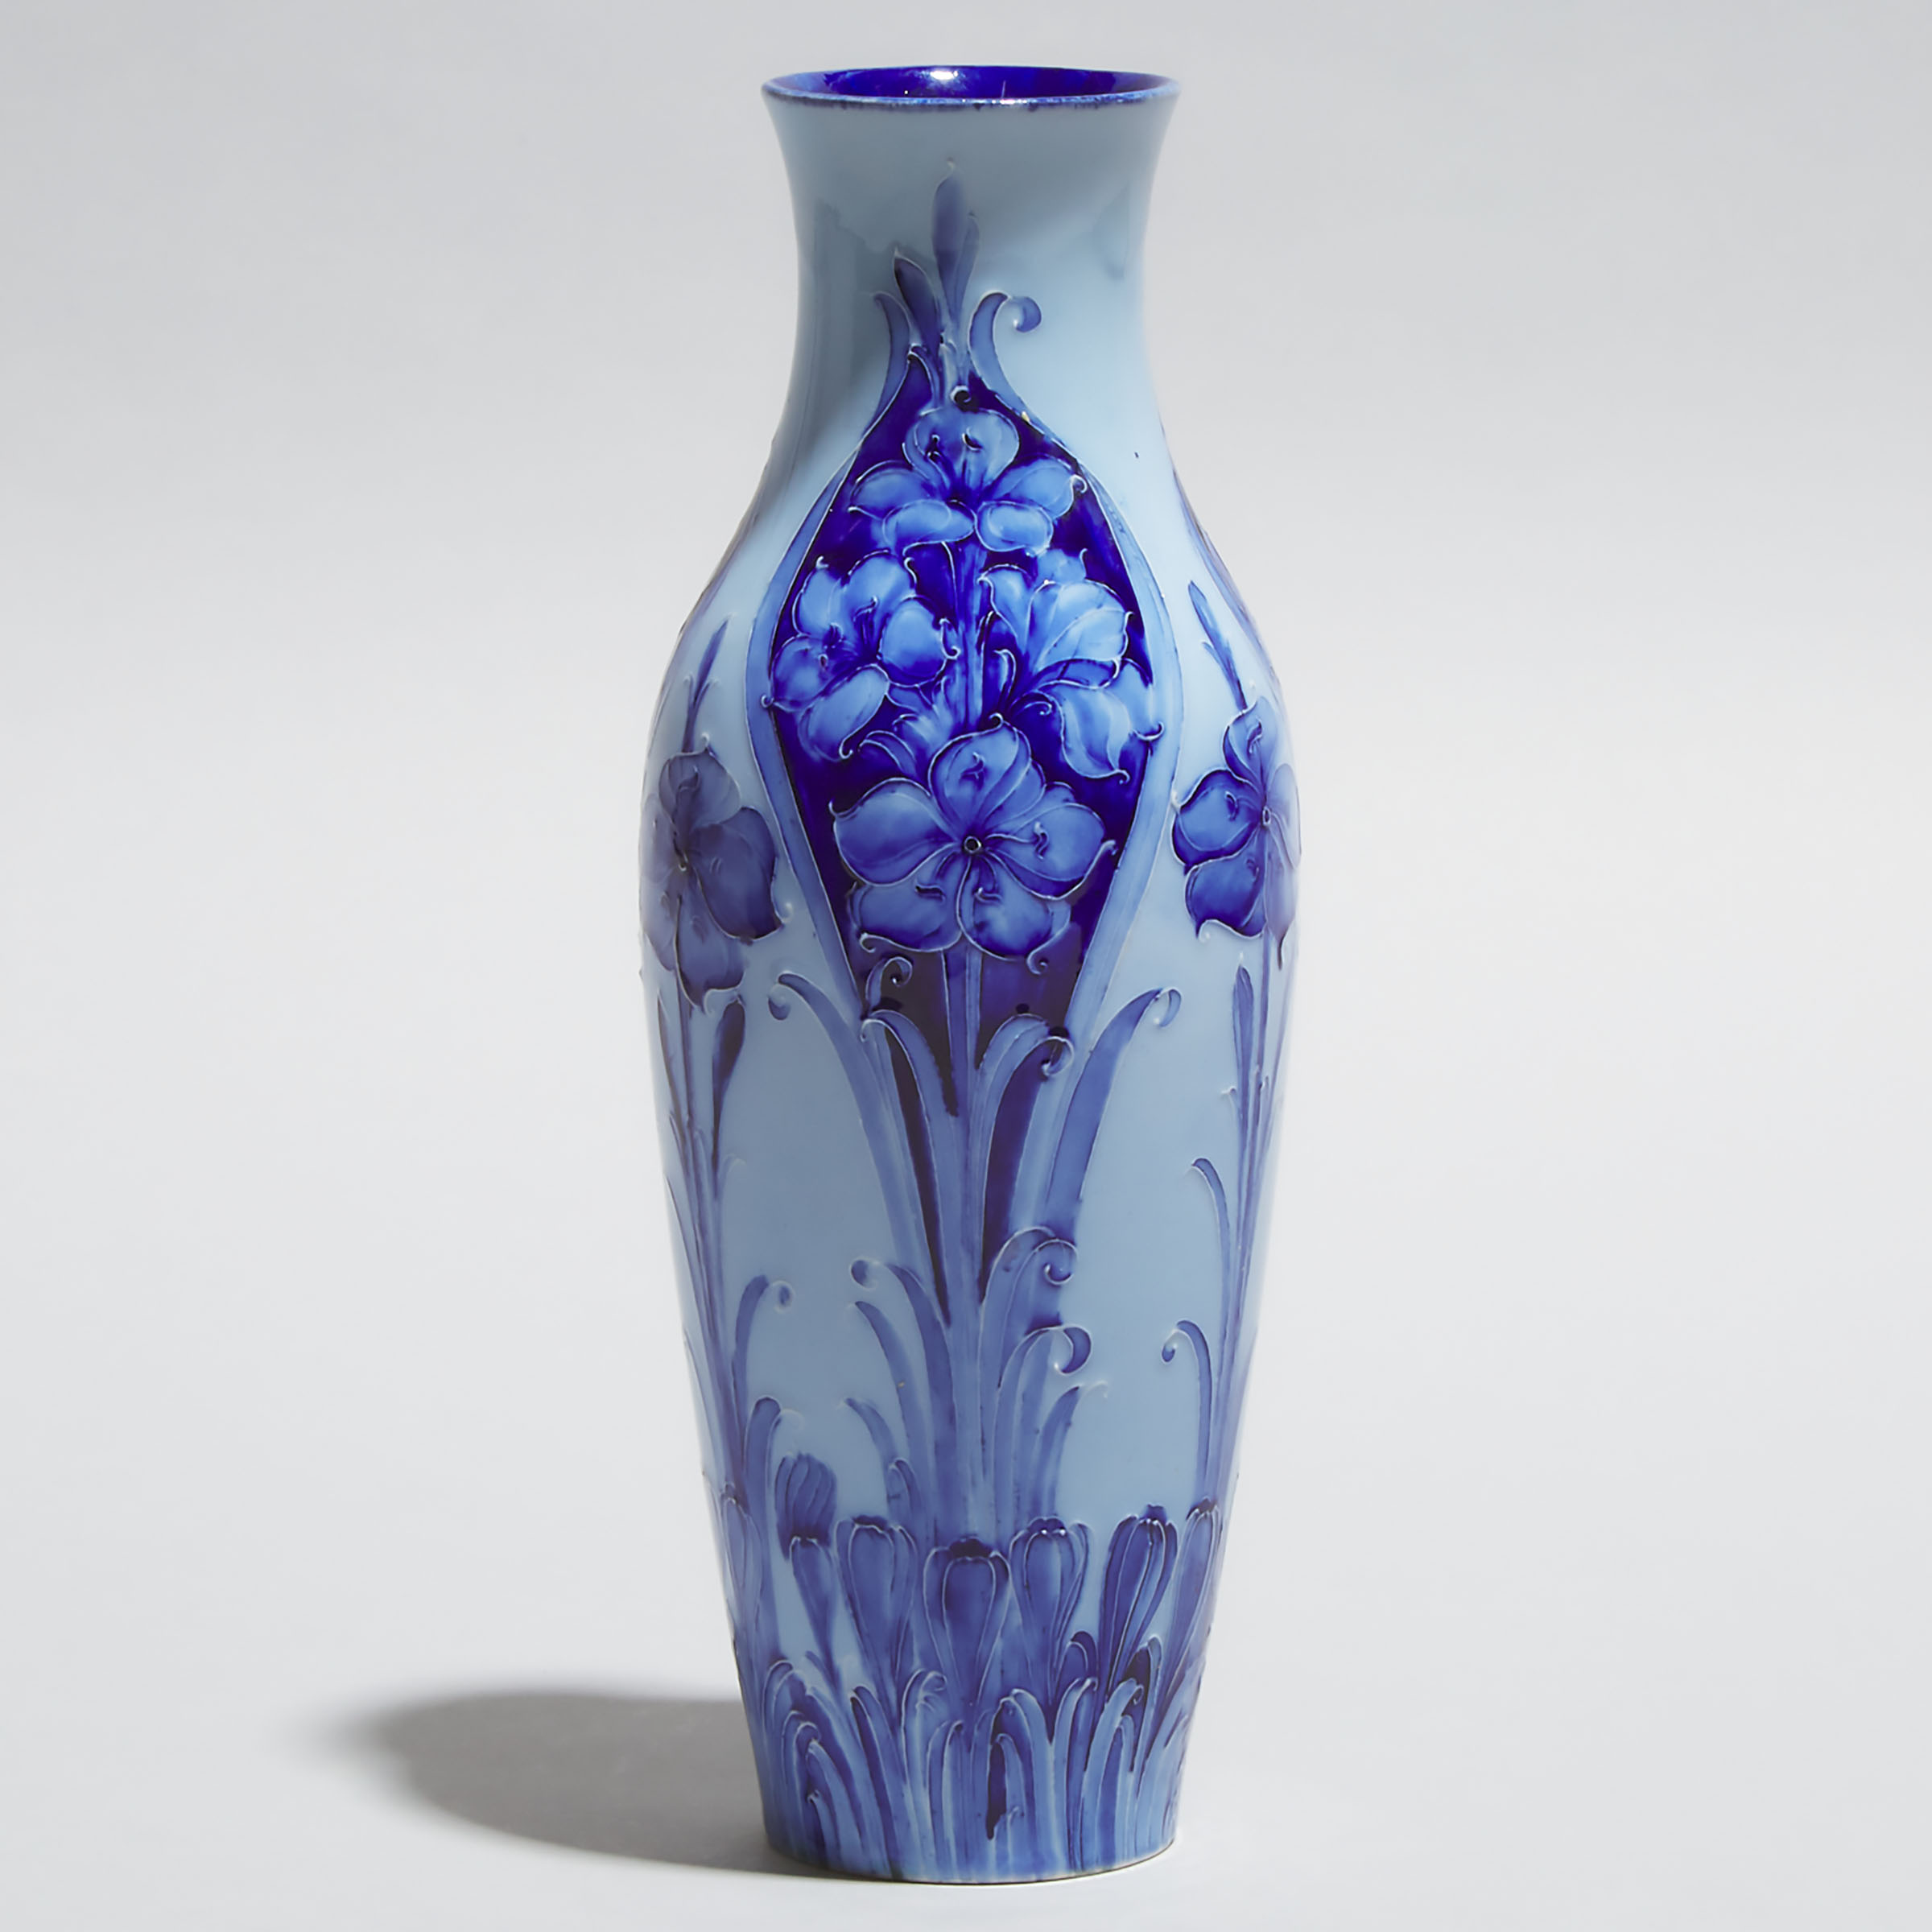 Macintyre Moorcroft Florian Ware Vase, c.1900-05